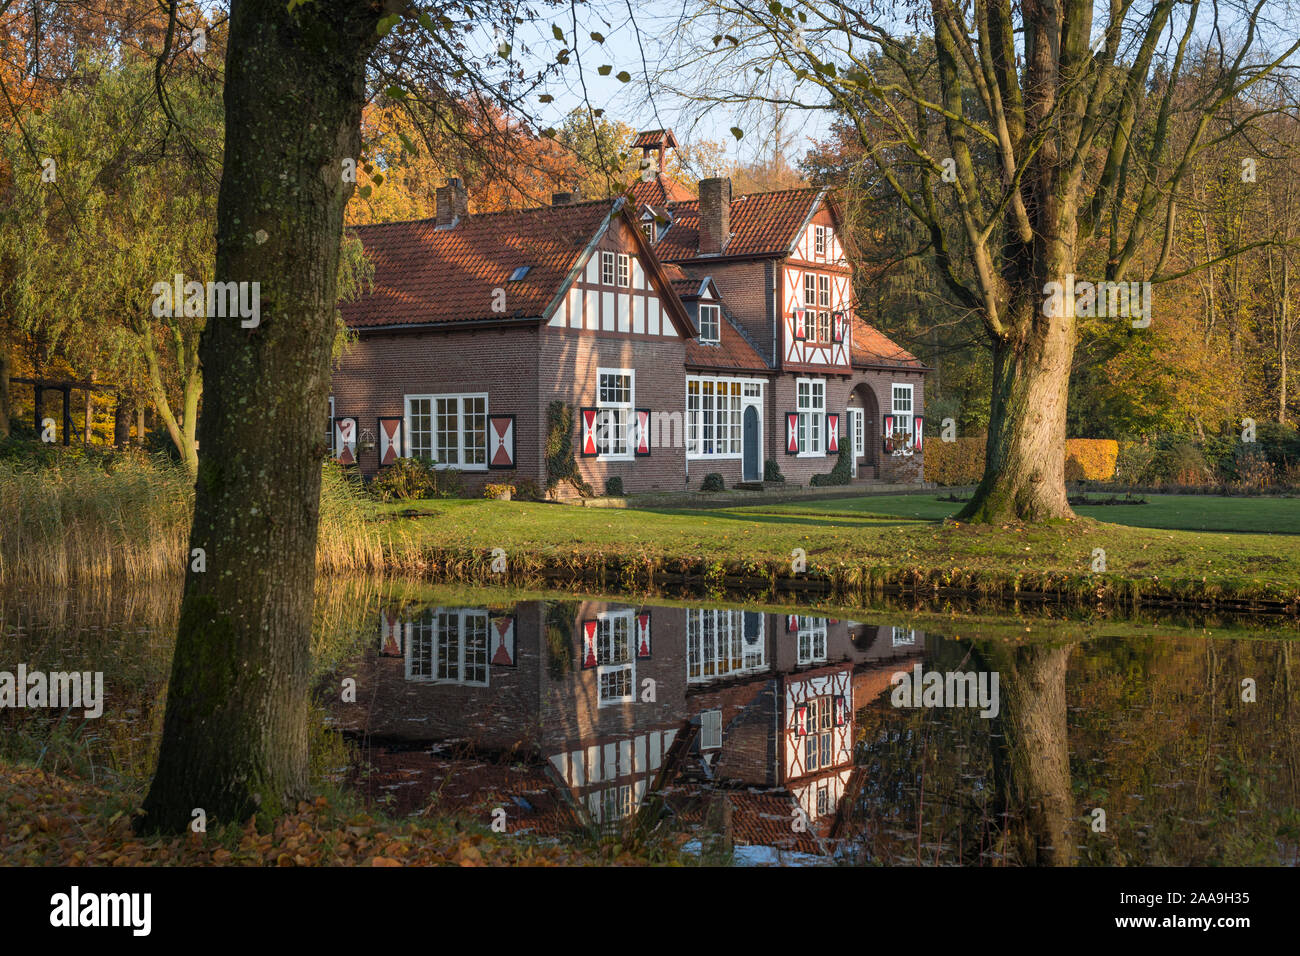 Bellissima casa di campagna con otturatori lungo il canal del castello di Heeze nei Paesi Bassi, riflettendo in acqua Foto Stock